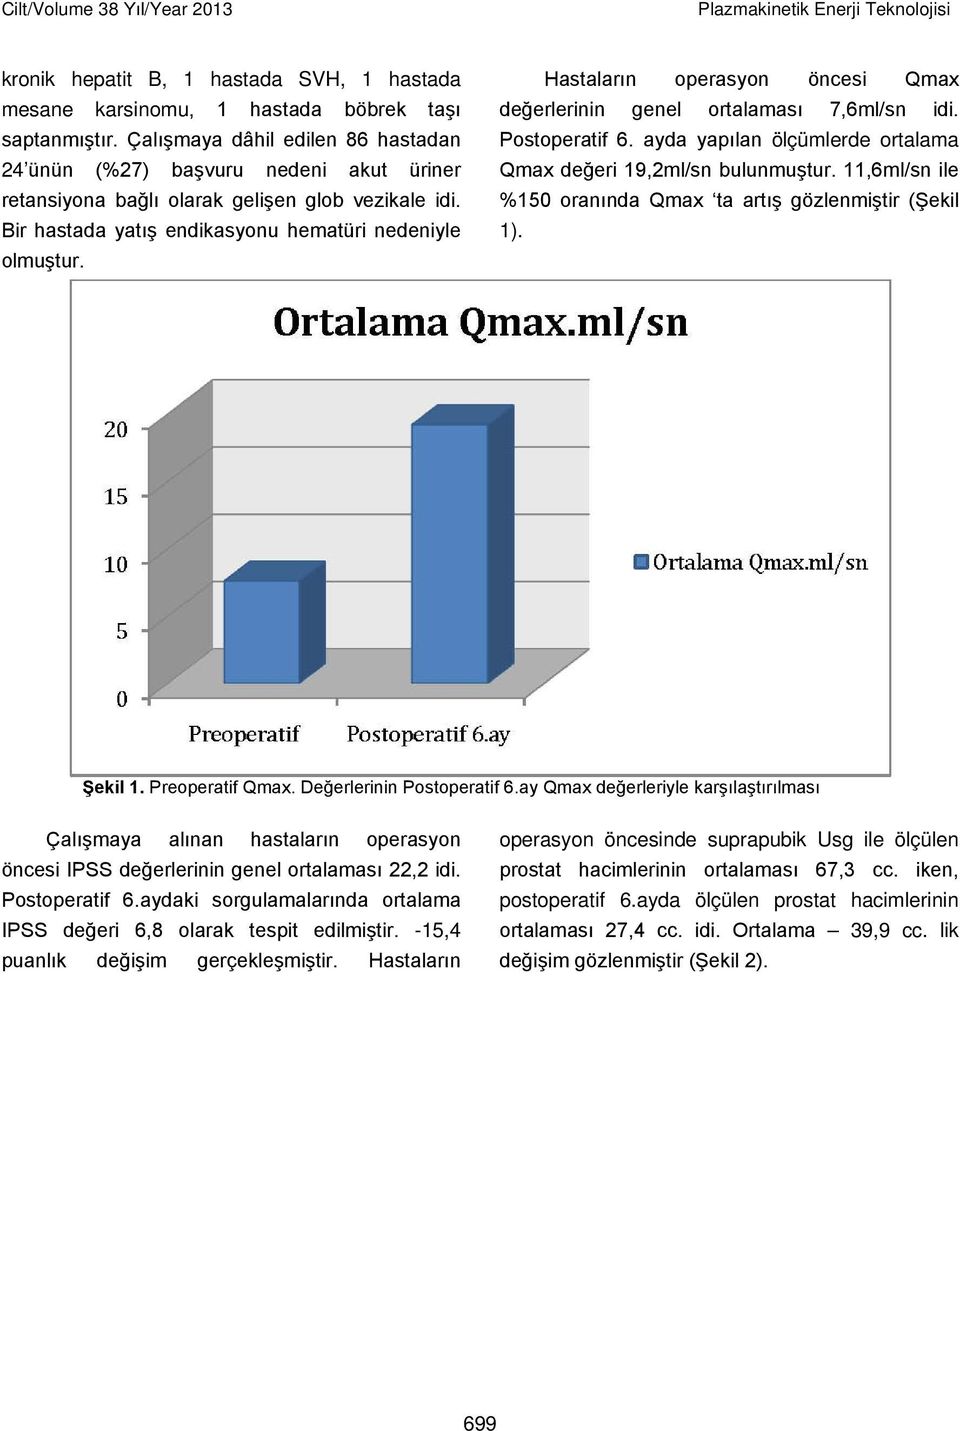 Hastaların operasyon öncesi Qmax değerlerinin genel ortalaması 7,6ml/sn idi. Postoperatif 6. ayda yapılan ölçümlerde ortalama Qmax değeri 19,2ml/sn bulunmuştur.